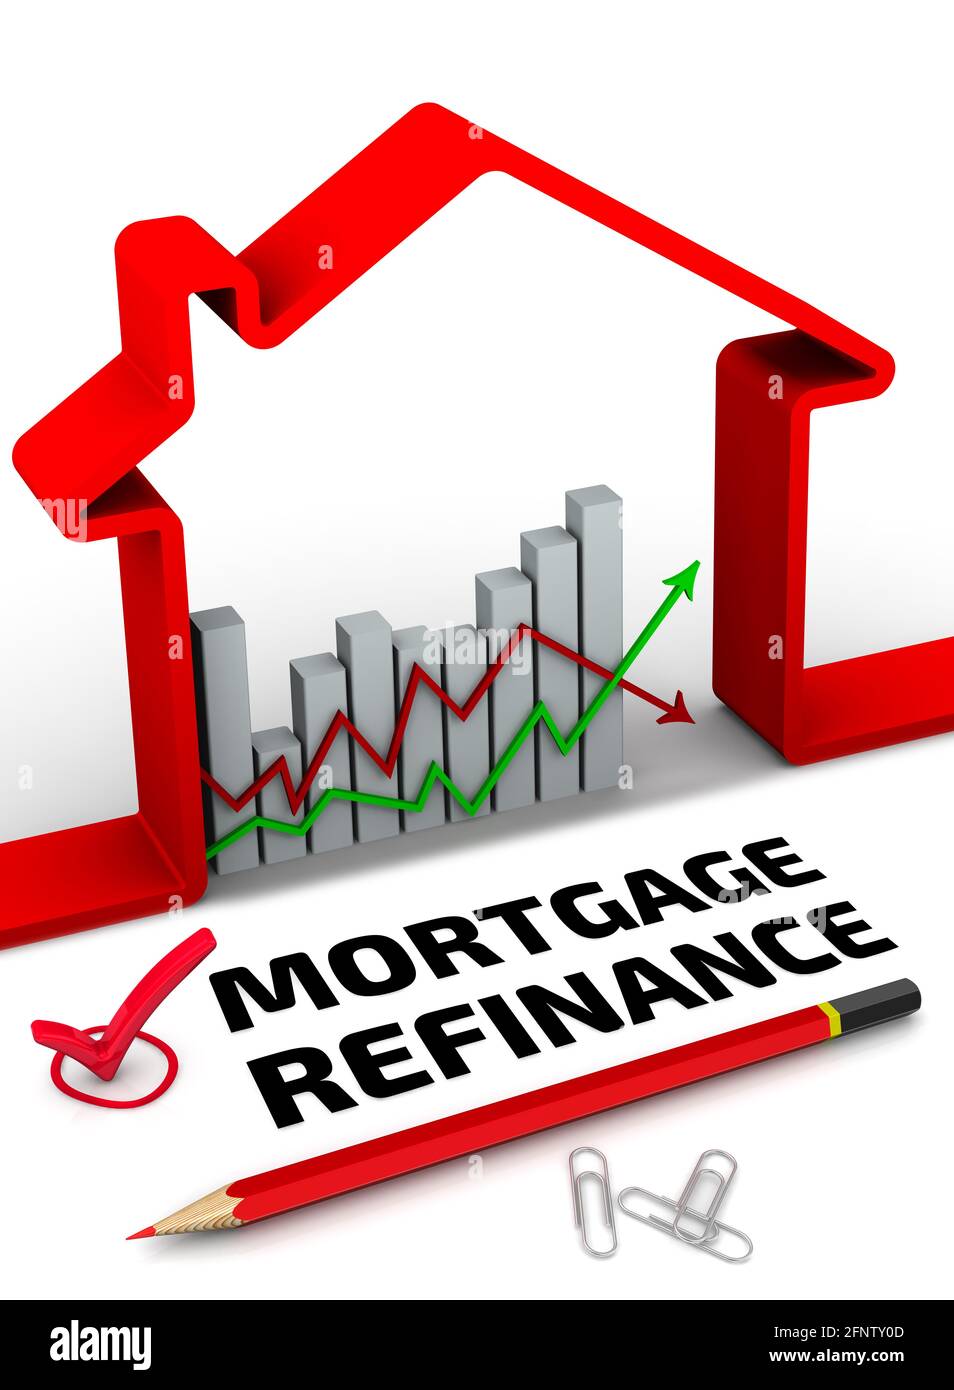 Refinancement hypothécaire. Une coche rouge avec le texte noir REFINANCE HYPOTHÉCAIRE, un graphique des changements dans les taux d'intérêt sur les hypothèques, un symbole rouge de la maison... Banque D'Images